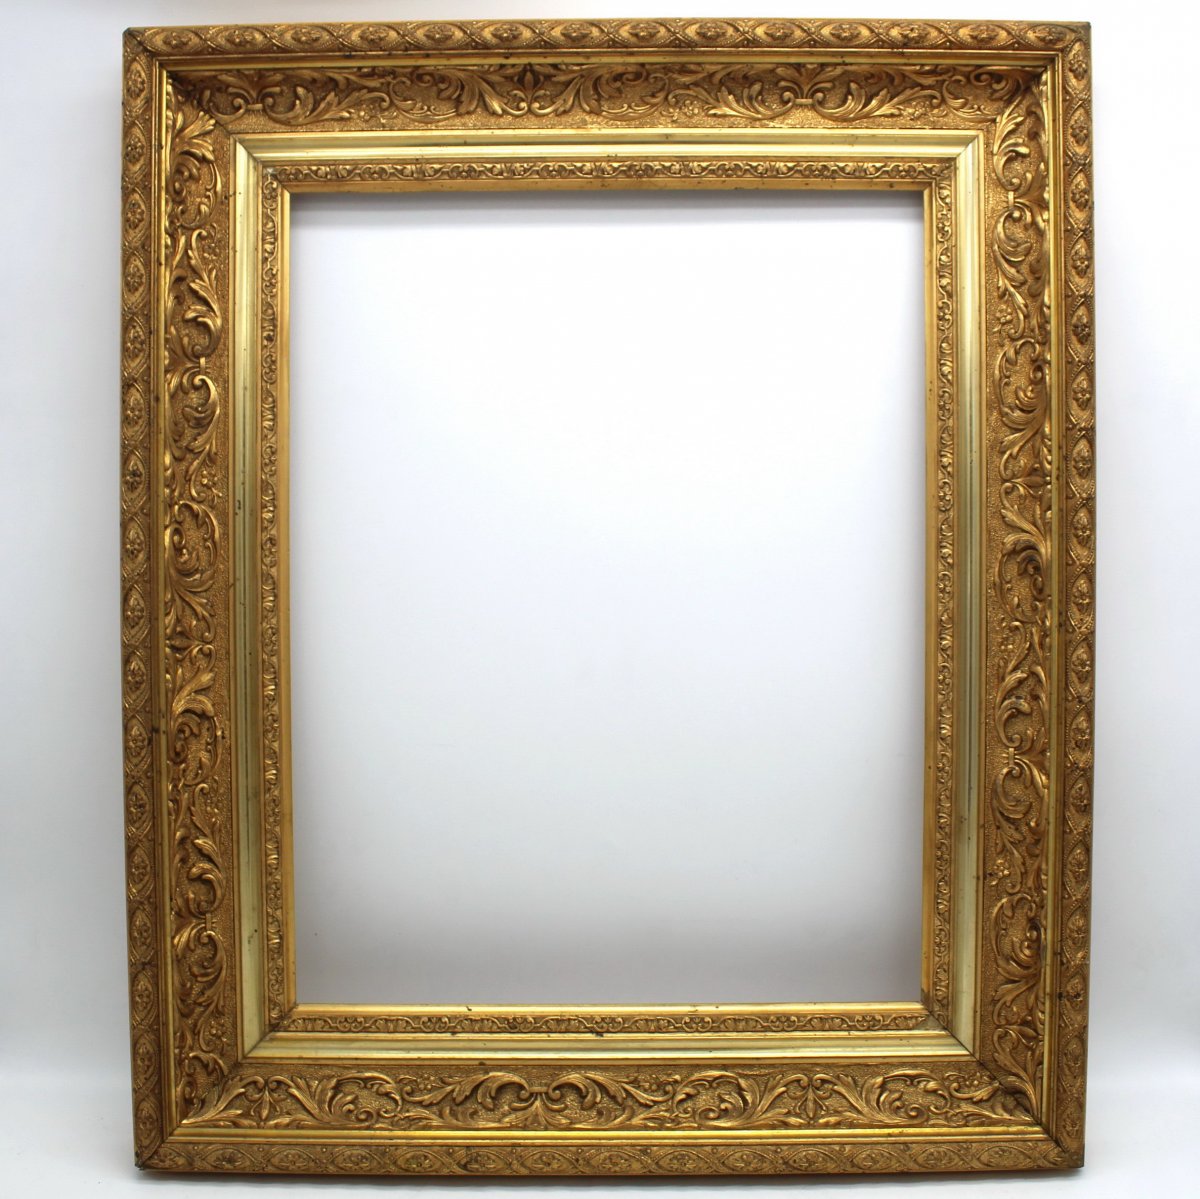 Antique Gilt Frame - 19th Century